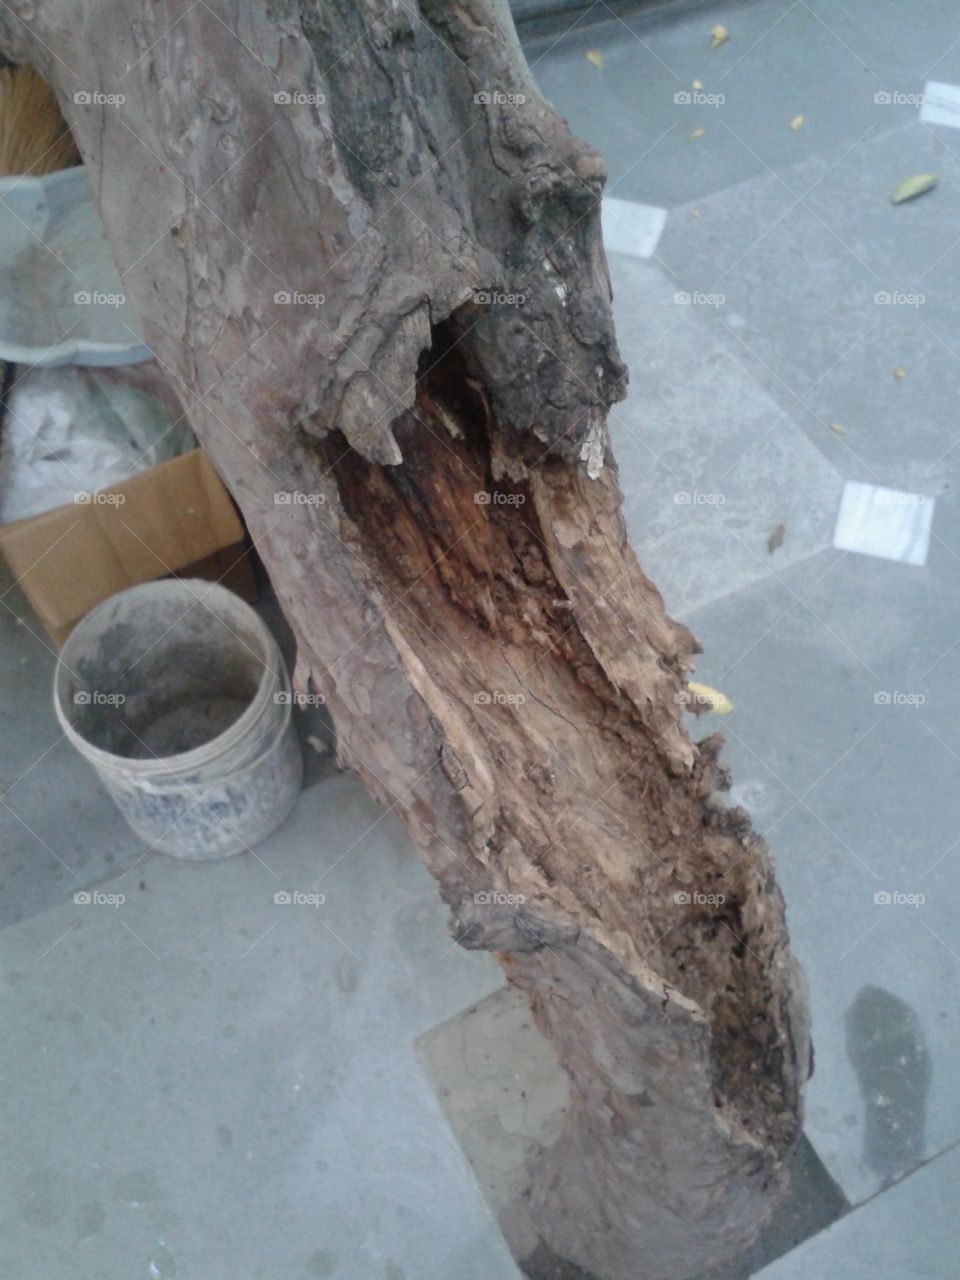 Termite eaten tree